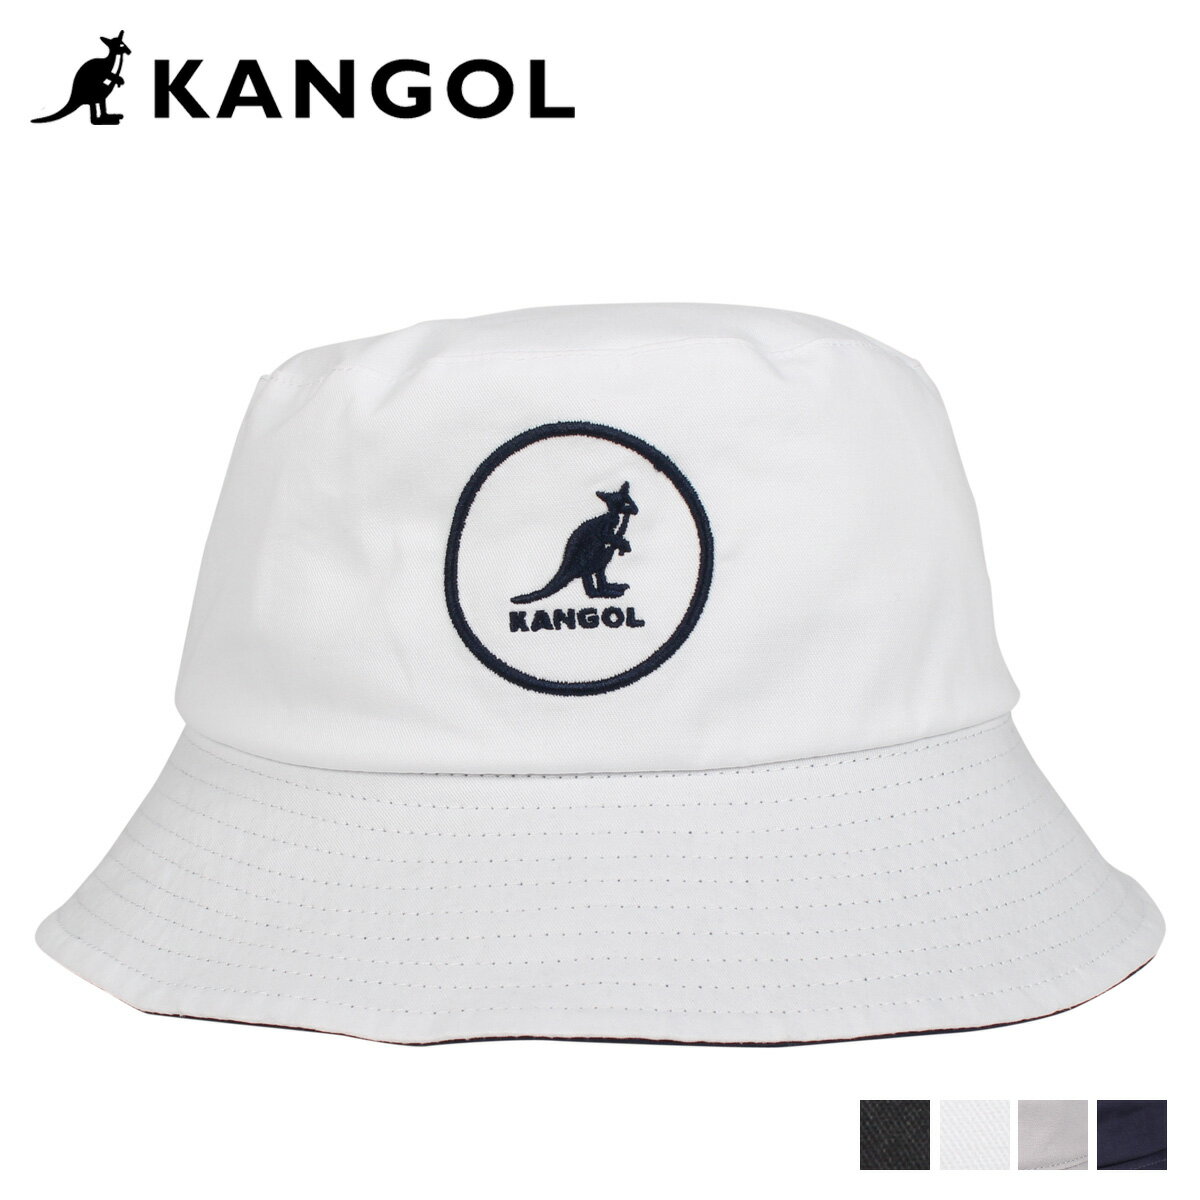 KANGOL カンゴール ハット キャップ 帽子 バケットハット メンズ レディース COTTON BUCKET ブラック ホワイト ライト グレー ネイビー 黒 白 100169222